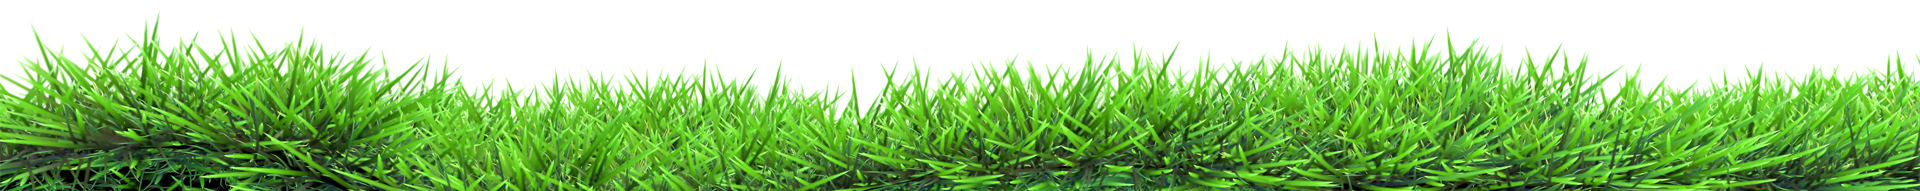 slide grass